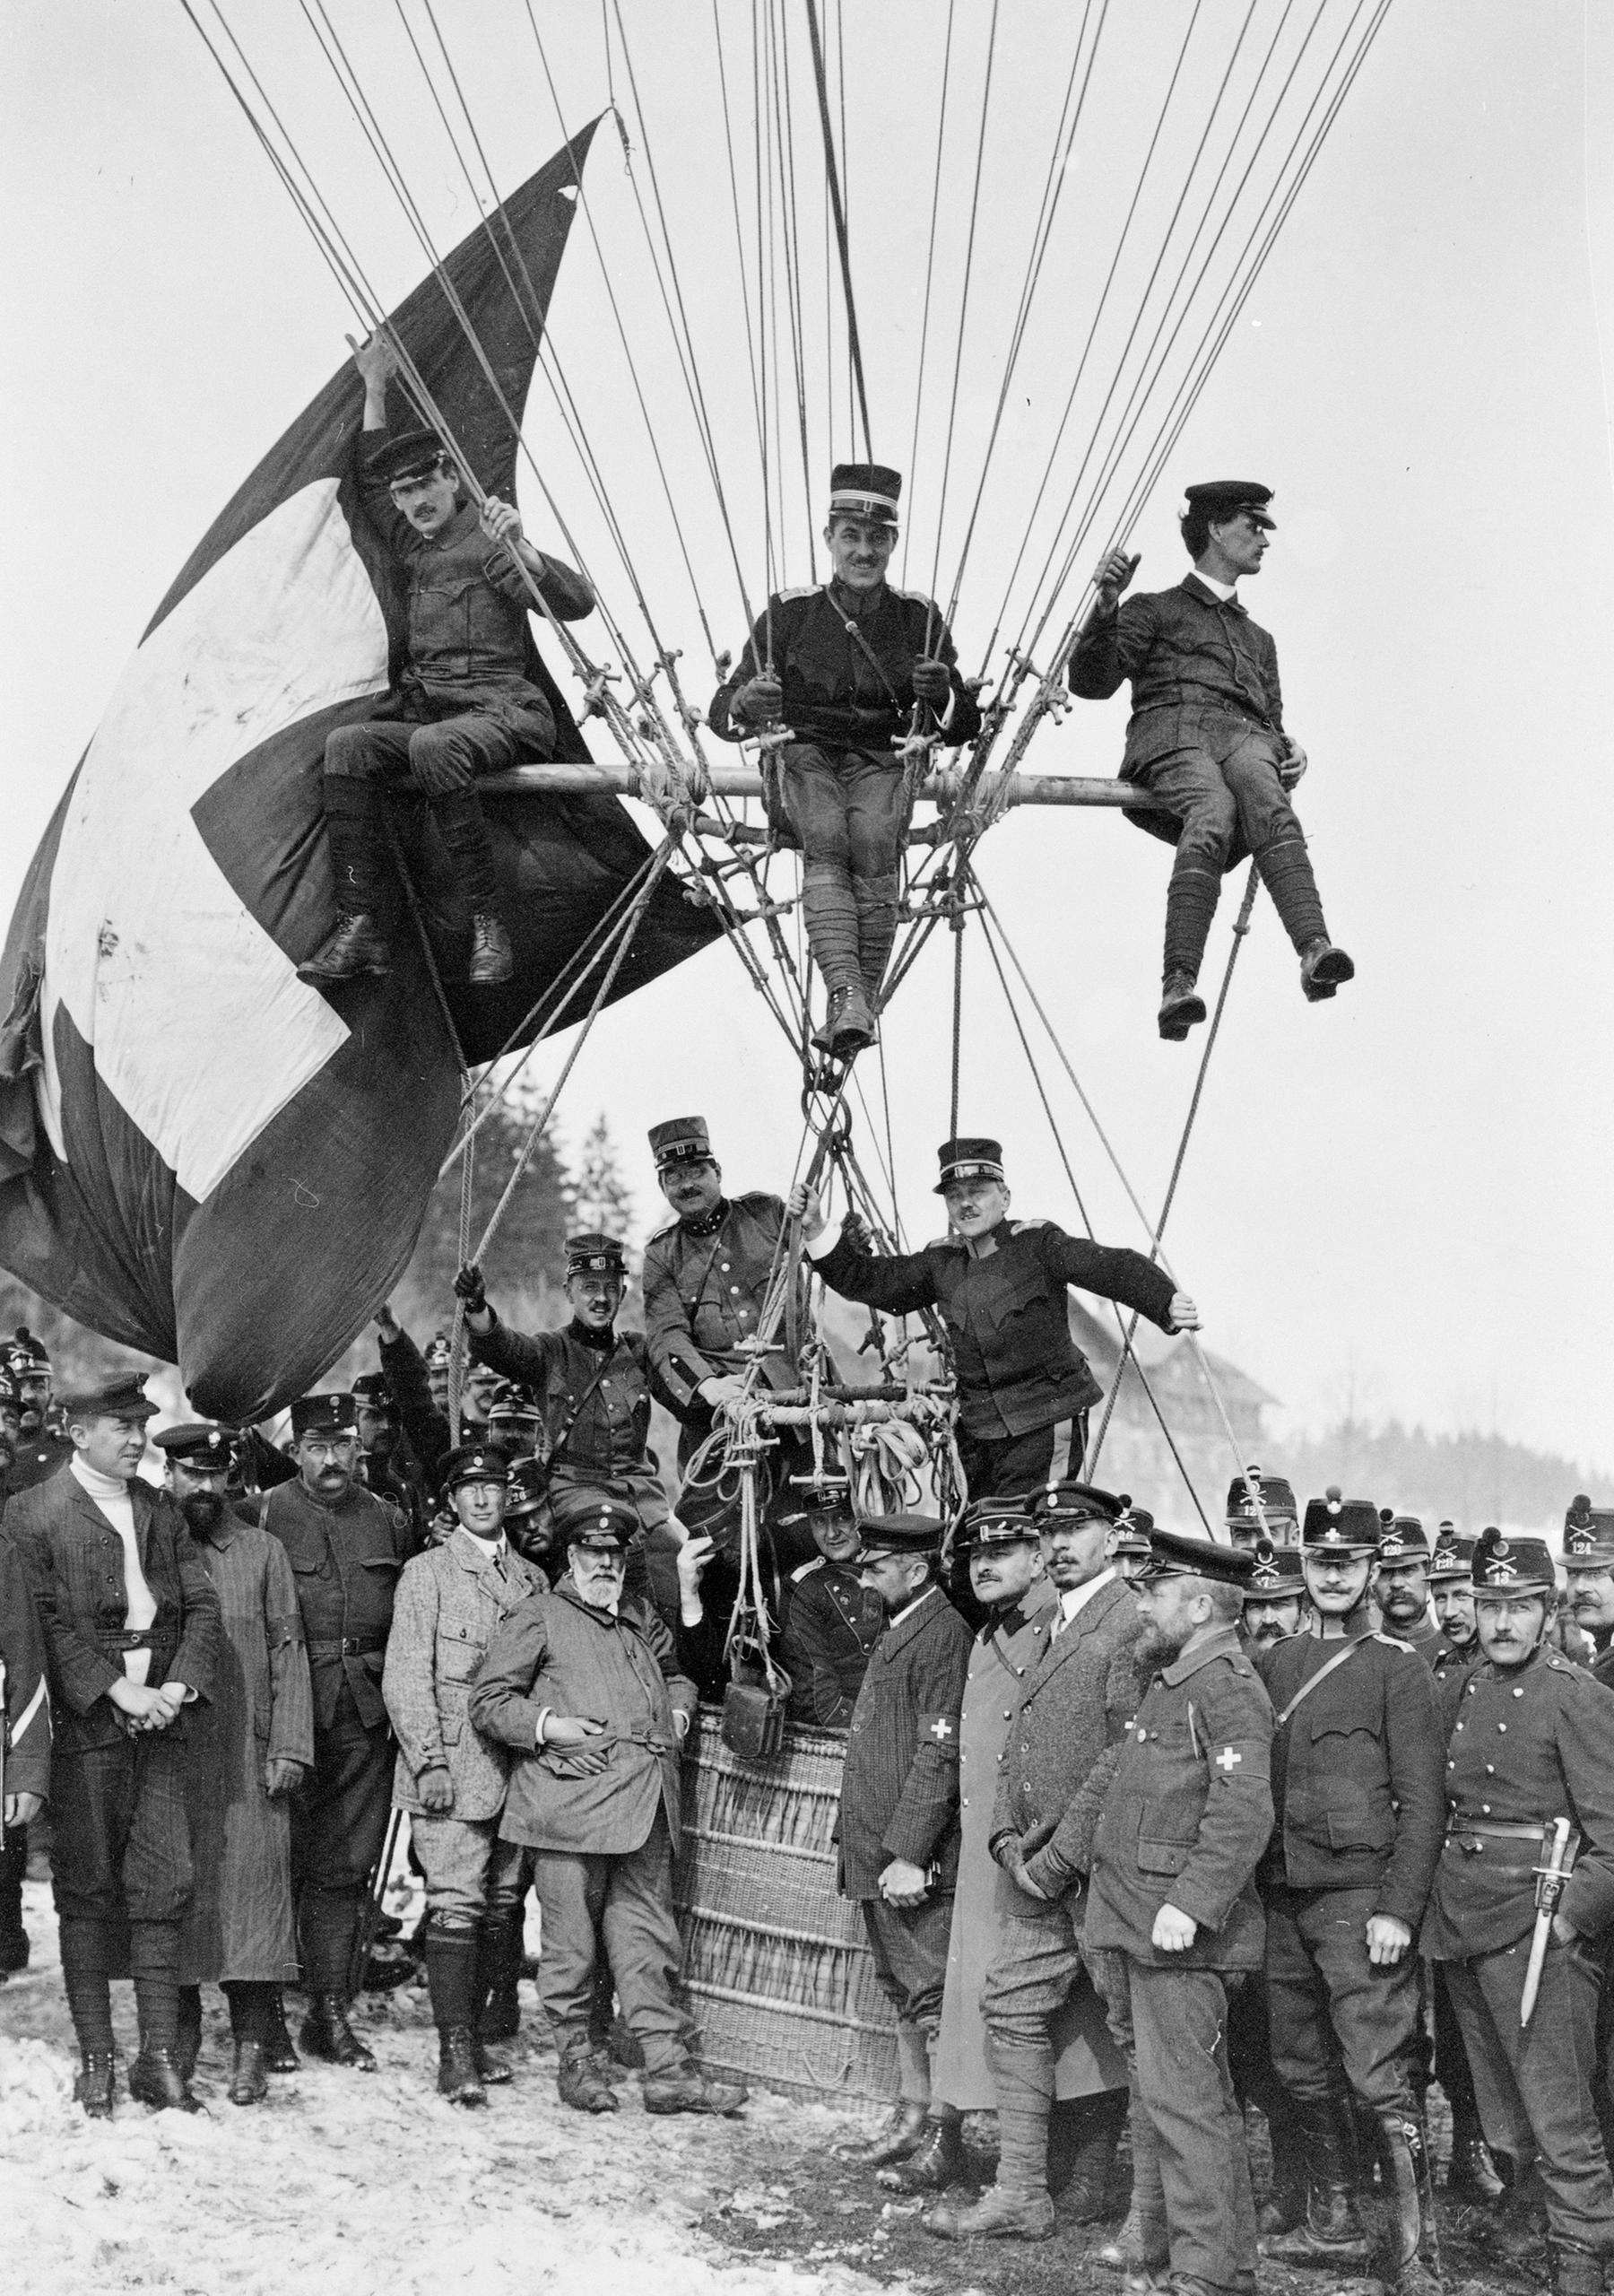 Swiss team at the Gordon Bennett Cup in Zurich 1909